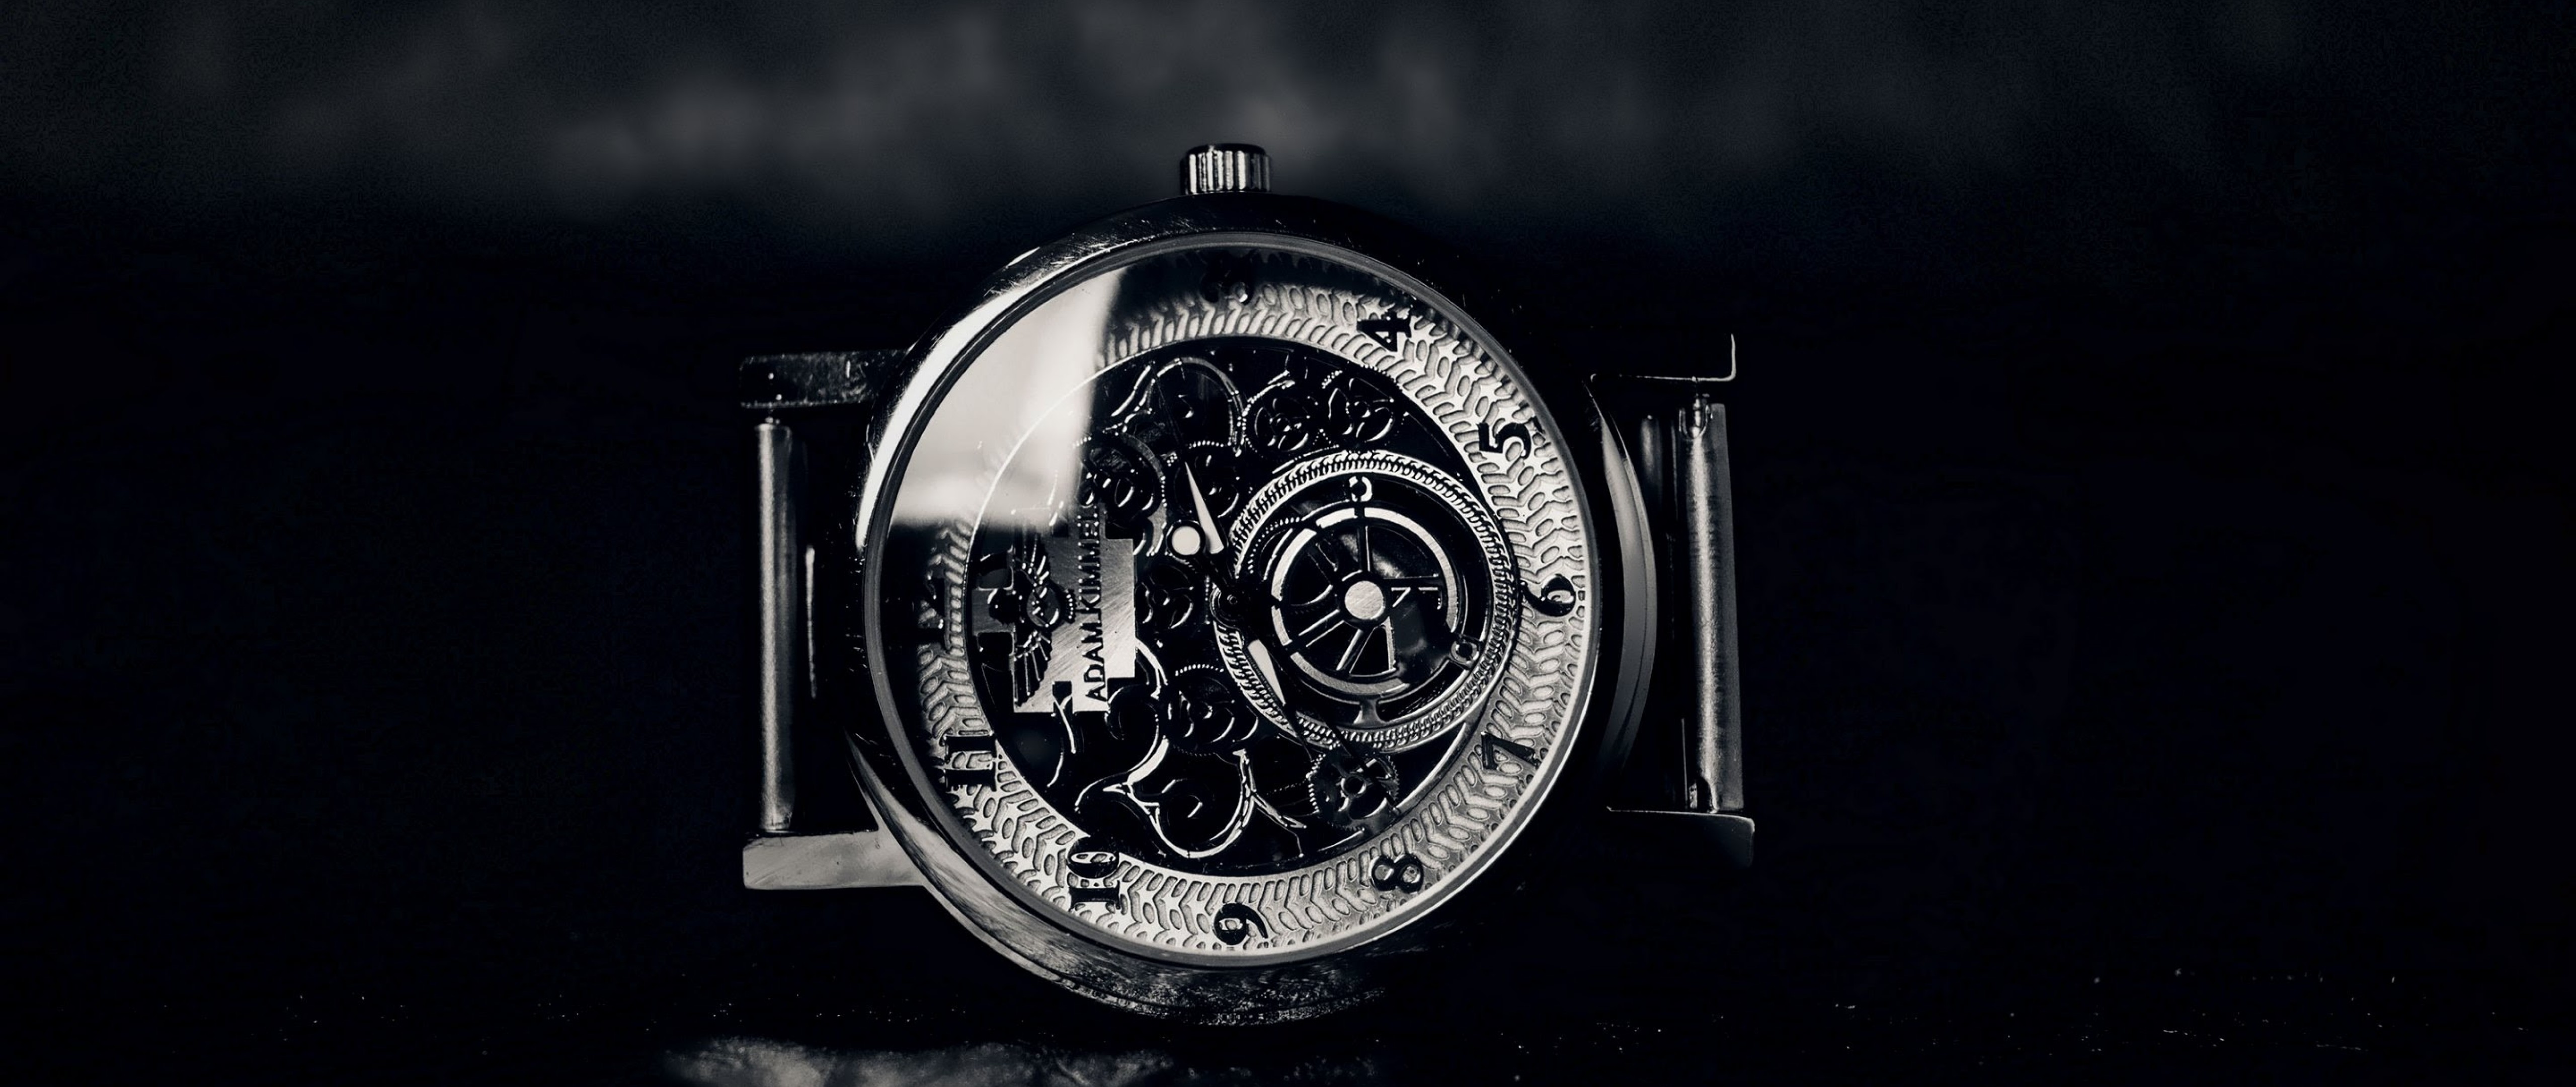 모바일 풀 hd 월페이퍼,손목 시계,시계 액세서리,검정,아날로그 시계,정물 사진